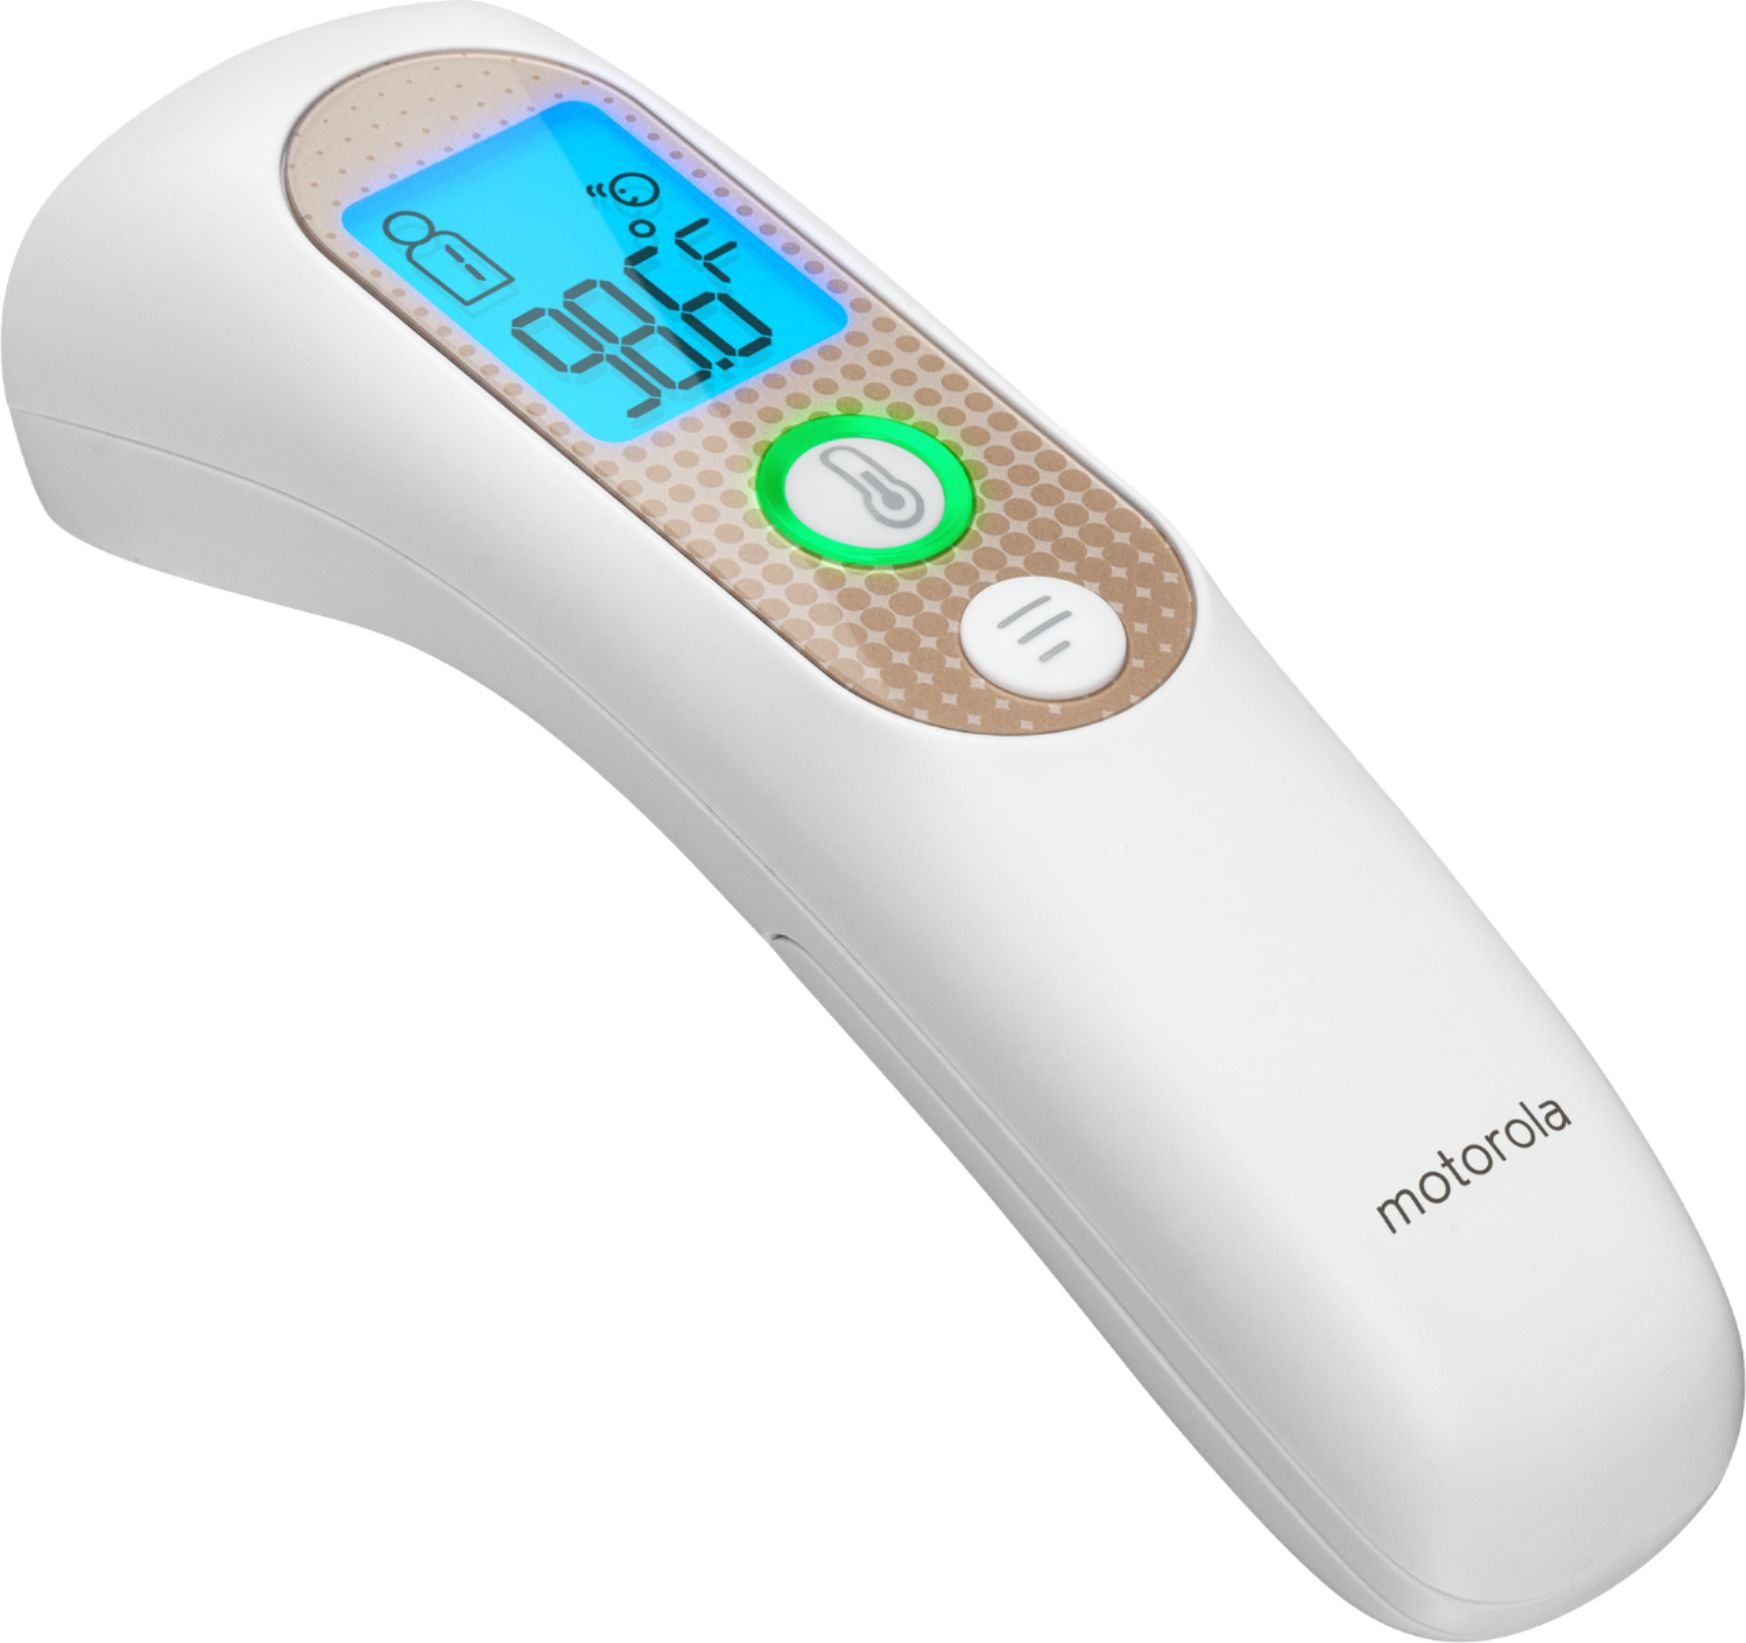 Citizen Electronic Thermometer CTE707 Predictive 15 SEC CTE707 White